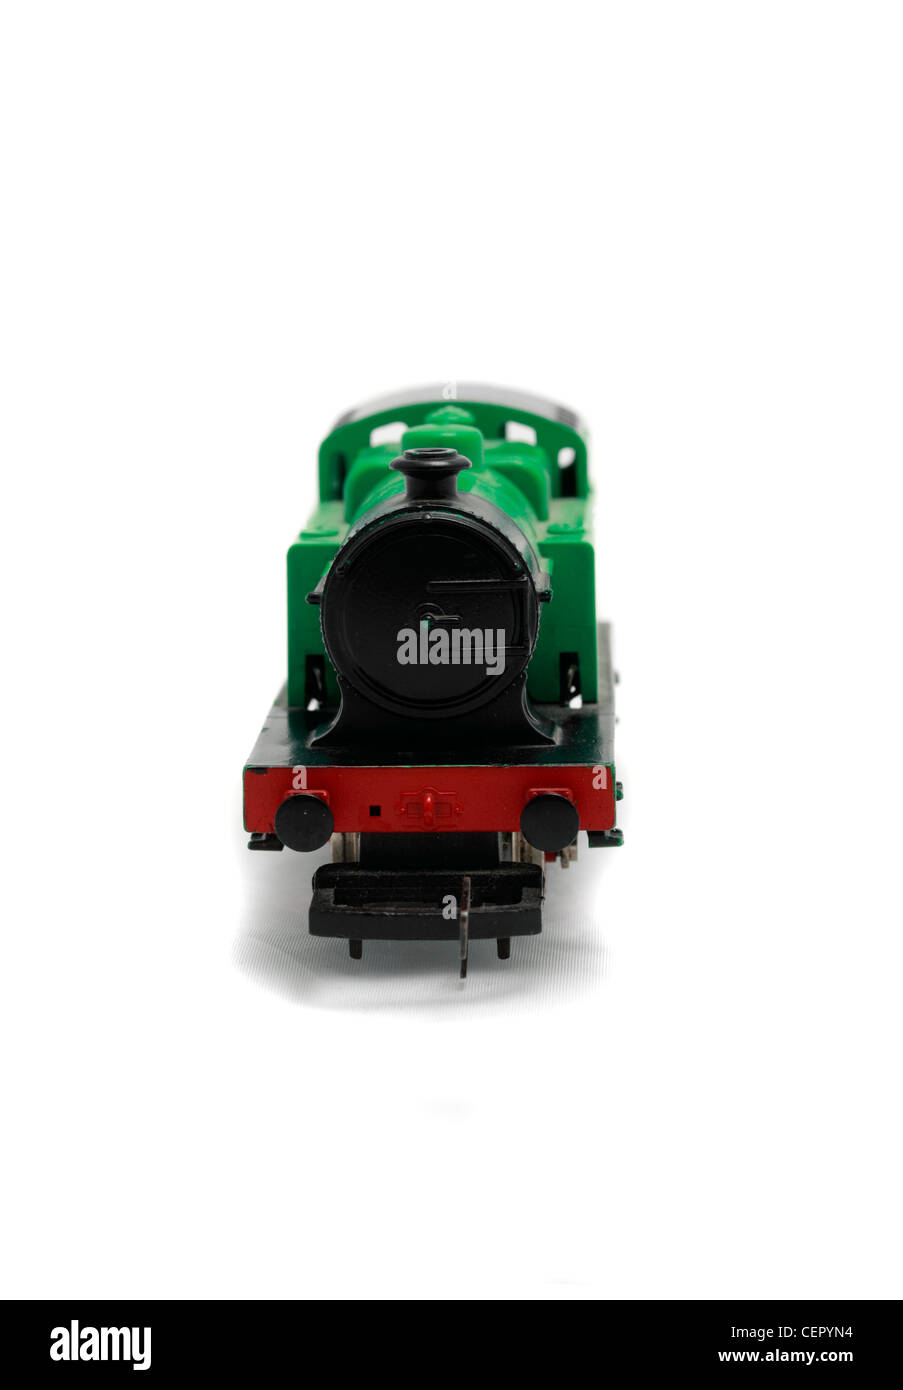 British Railways 0-4-0 vapore, derivatore 00 guage Hornby ferrovie elettriche modello di treno Foto Stock